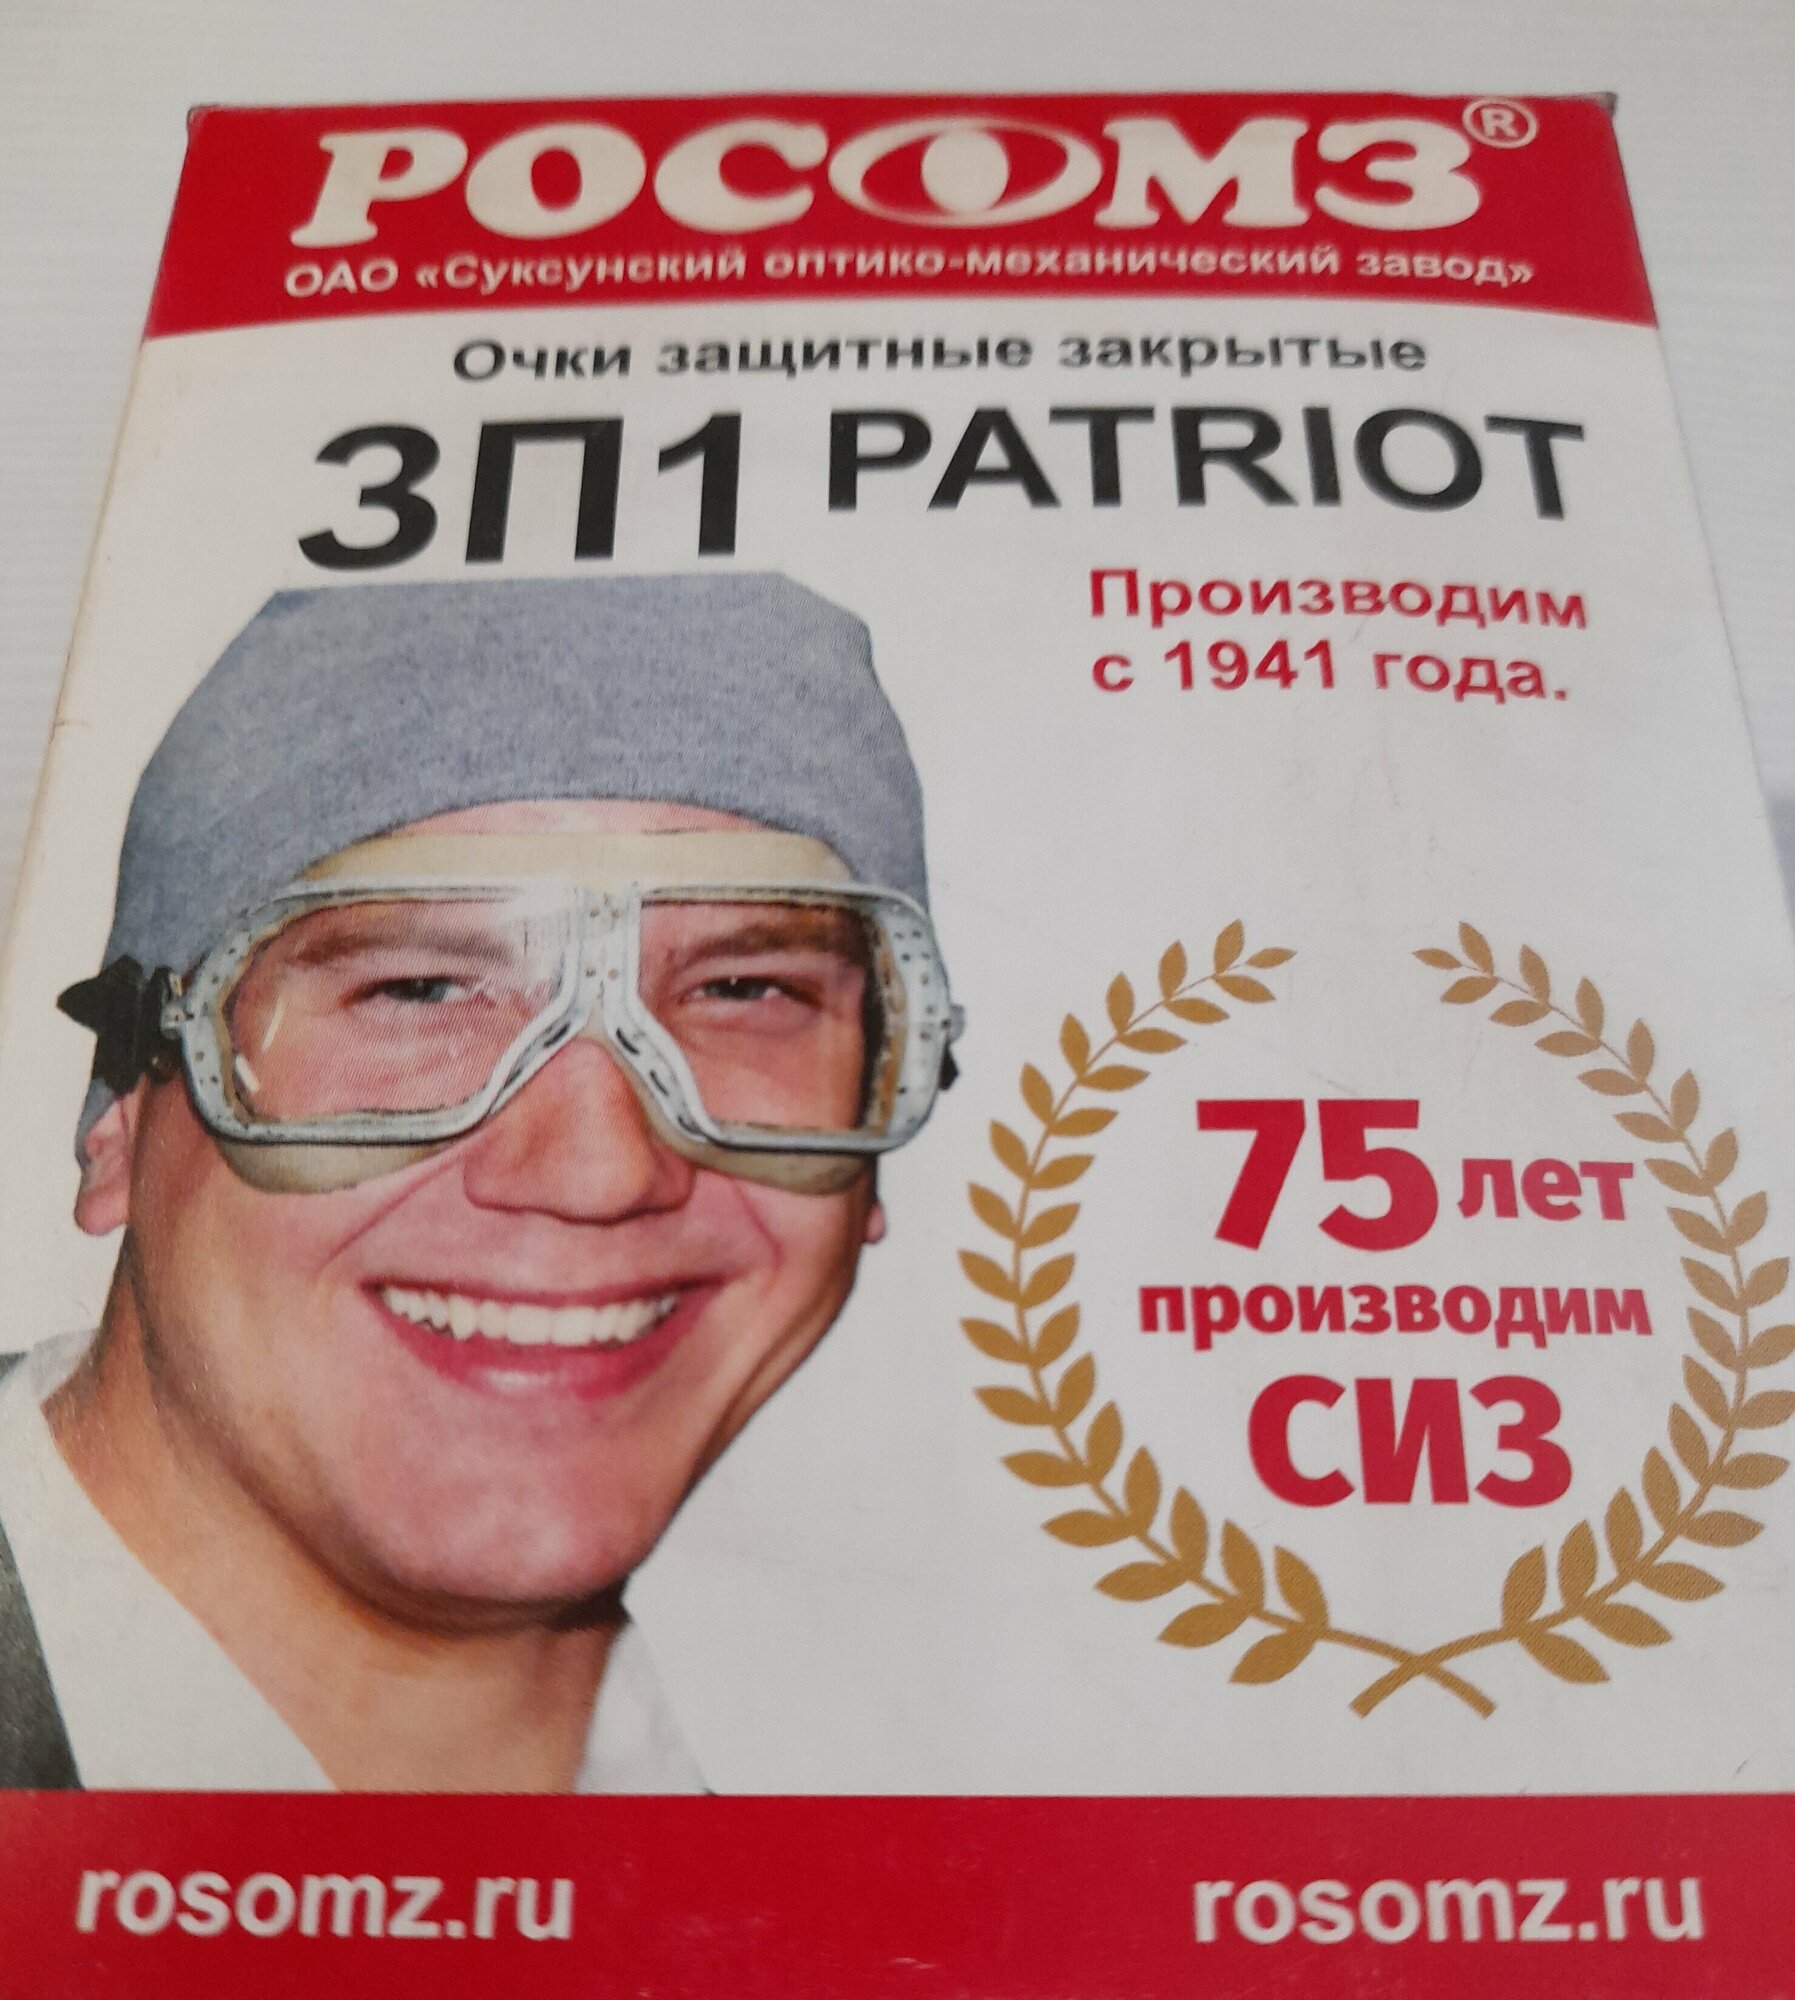 Защитные закрытые очки РОСОМЗ - фото №14